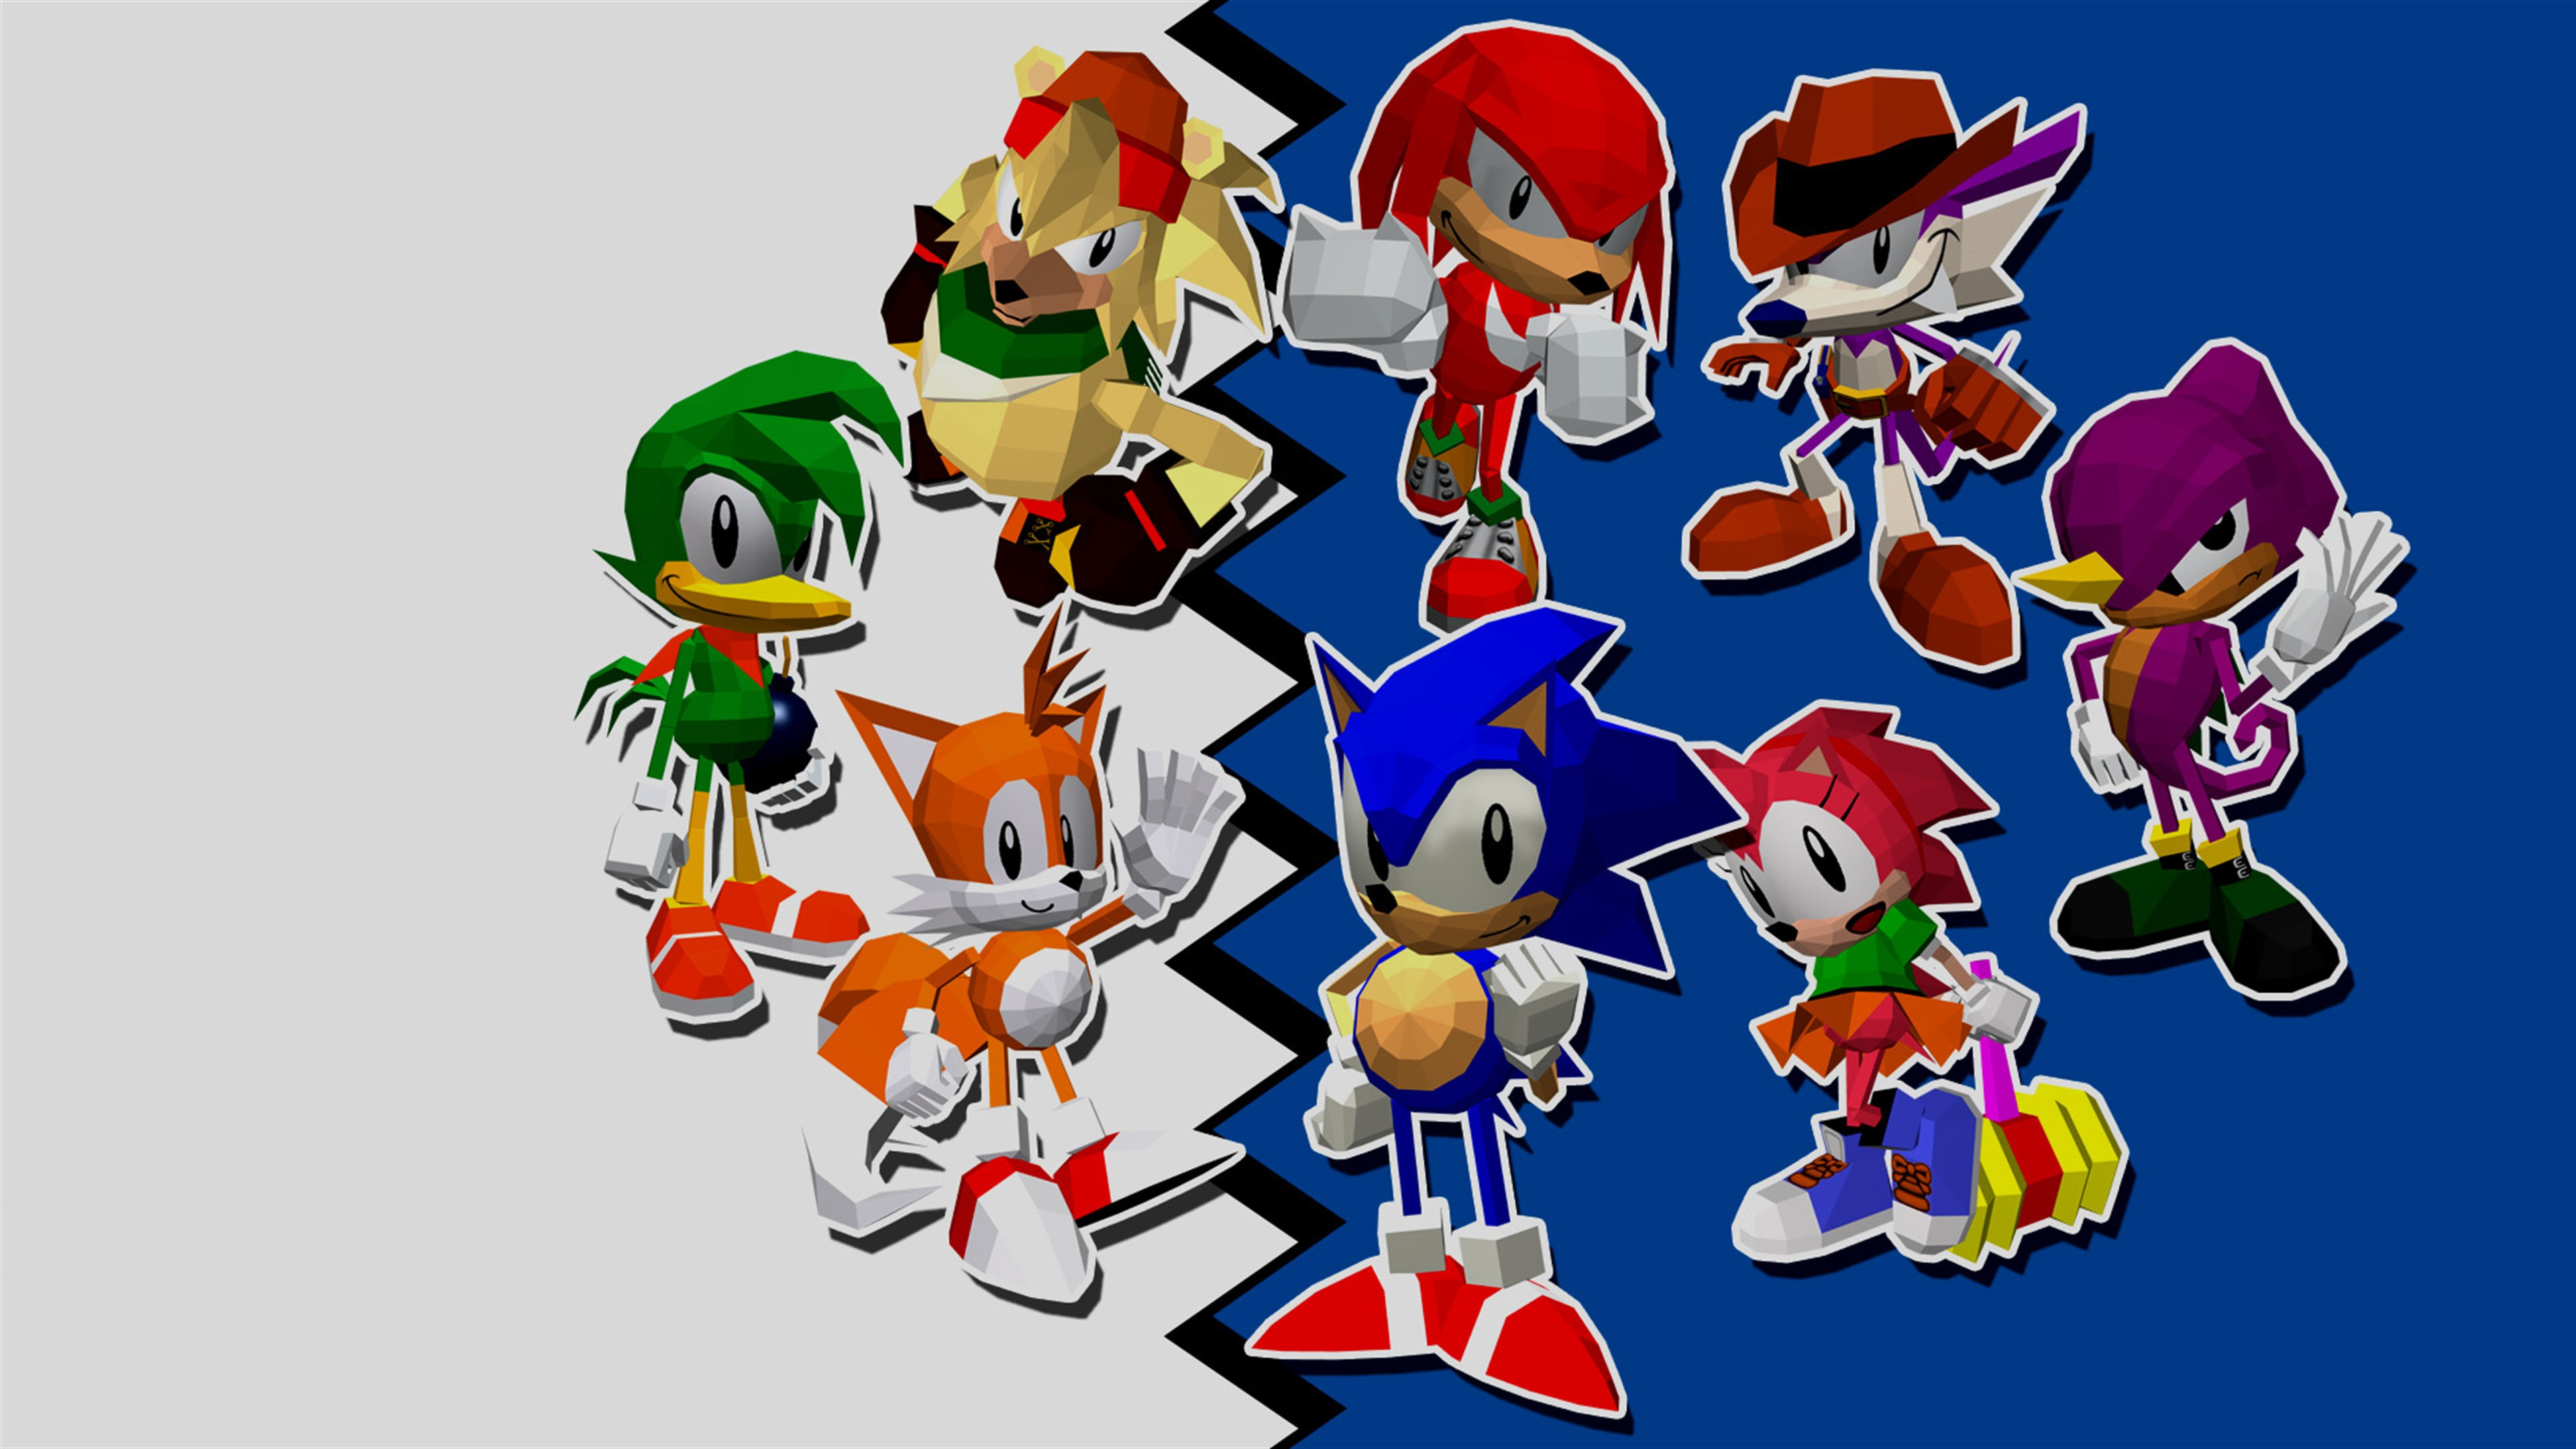 Sonic Championship